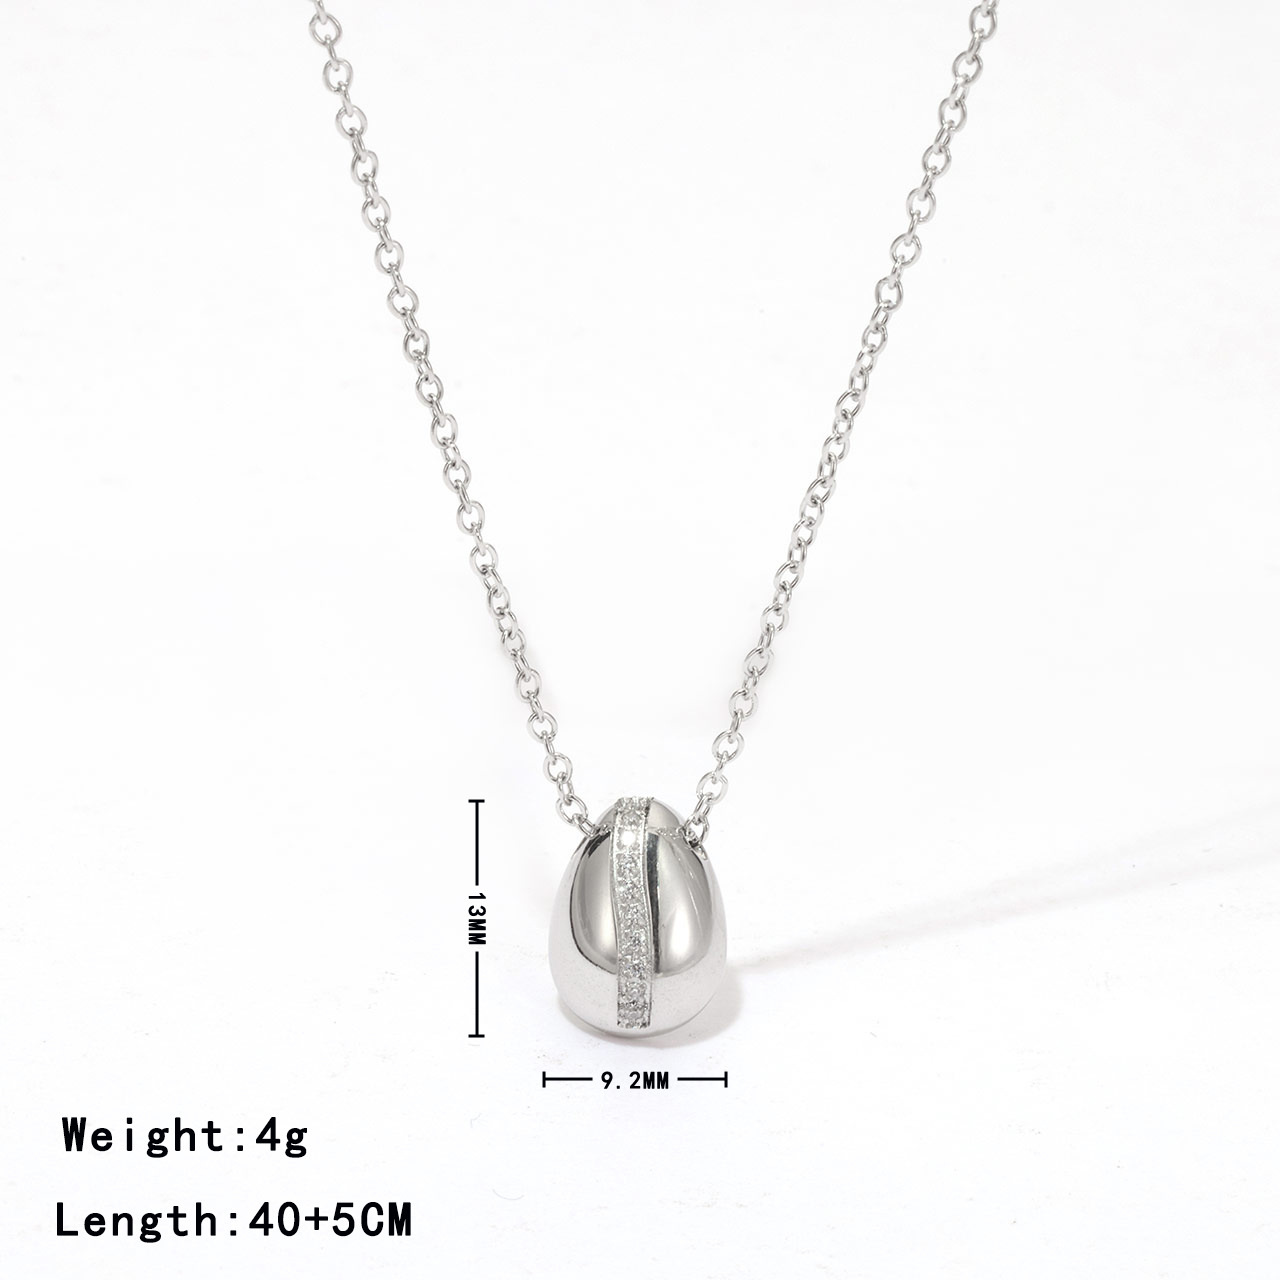 5:Platinum colour - Necklace